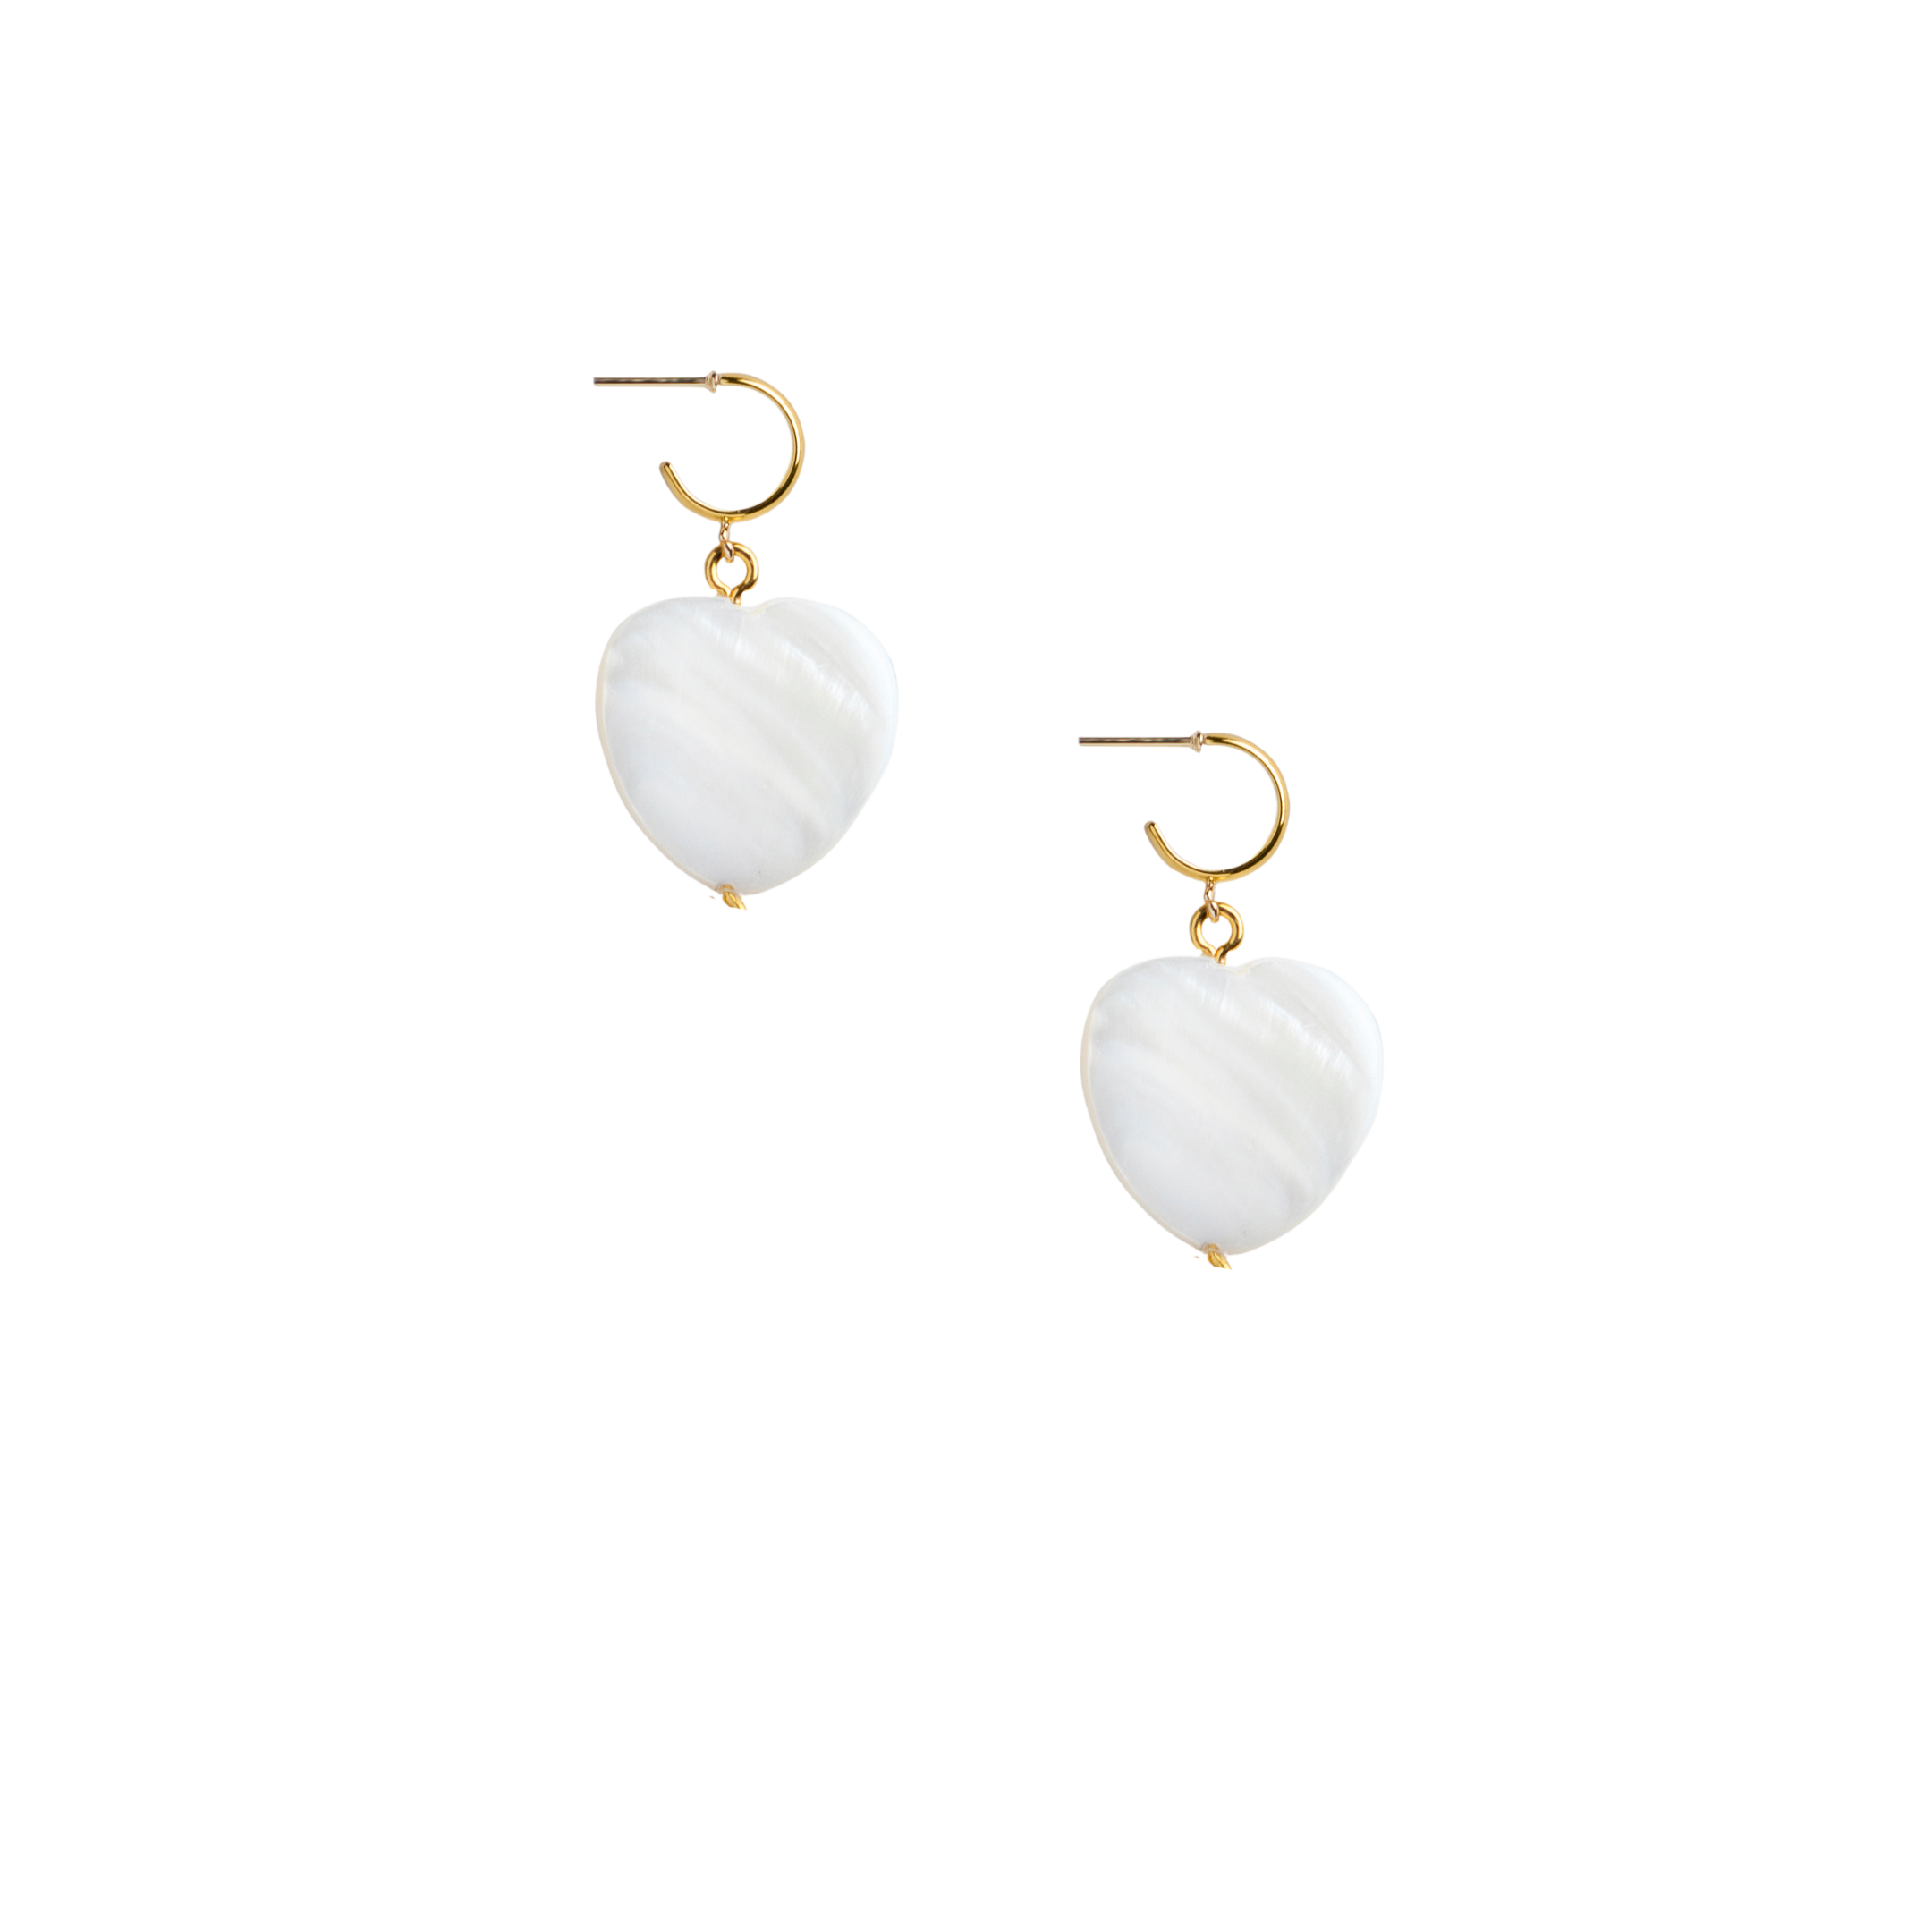 Two of Heart Earrings